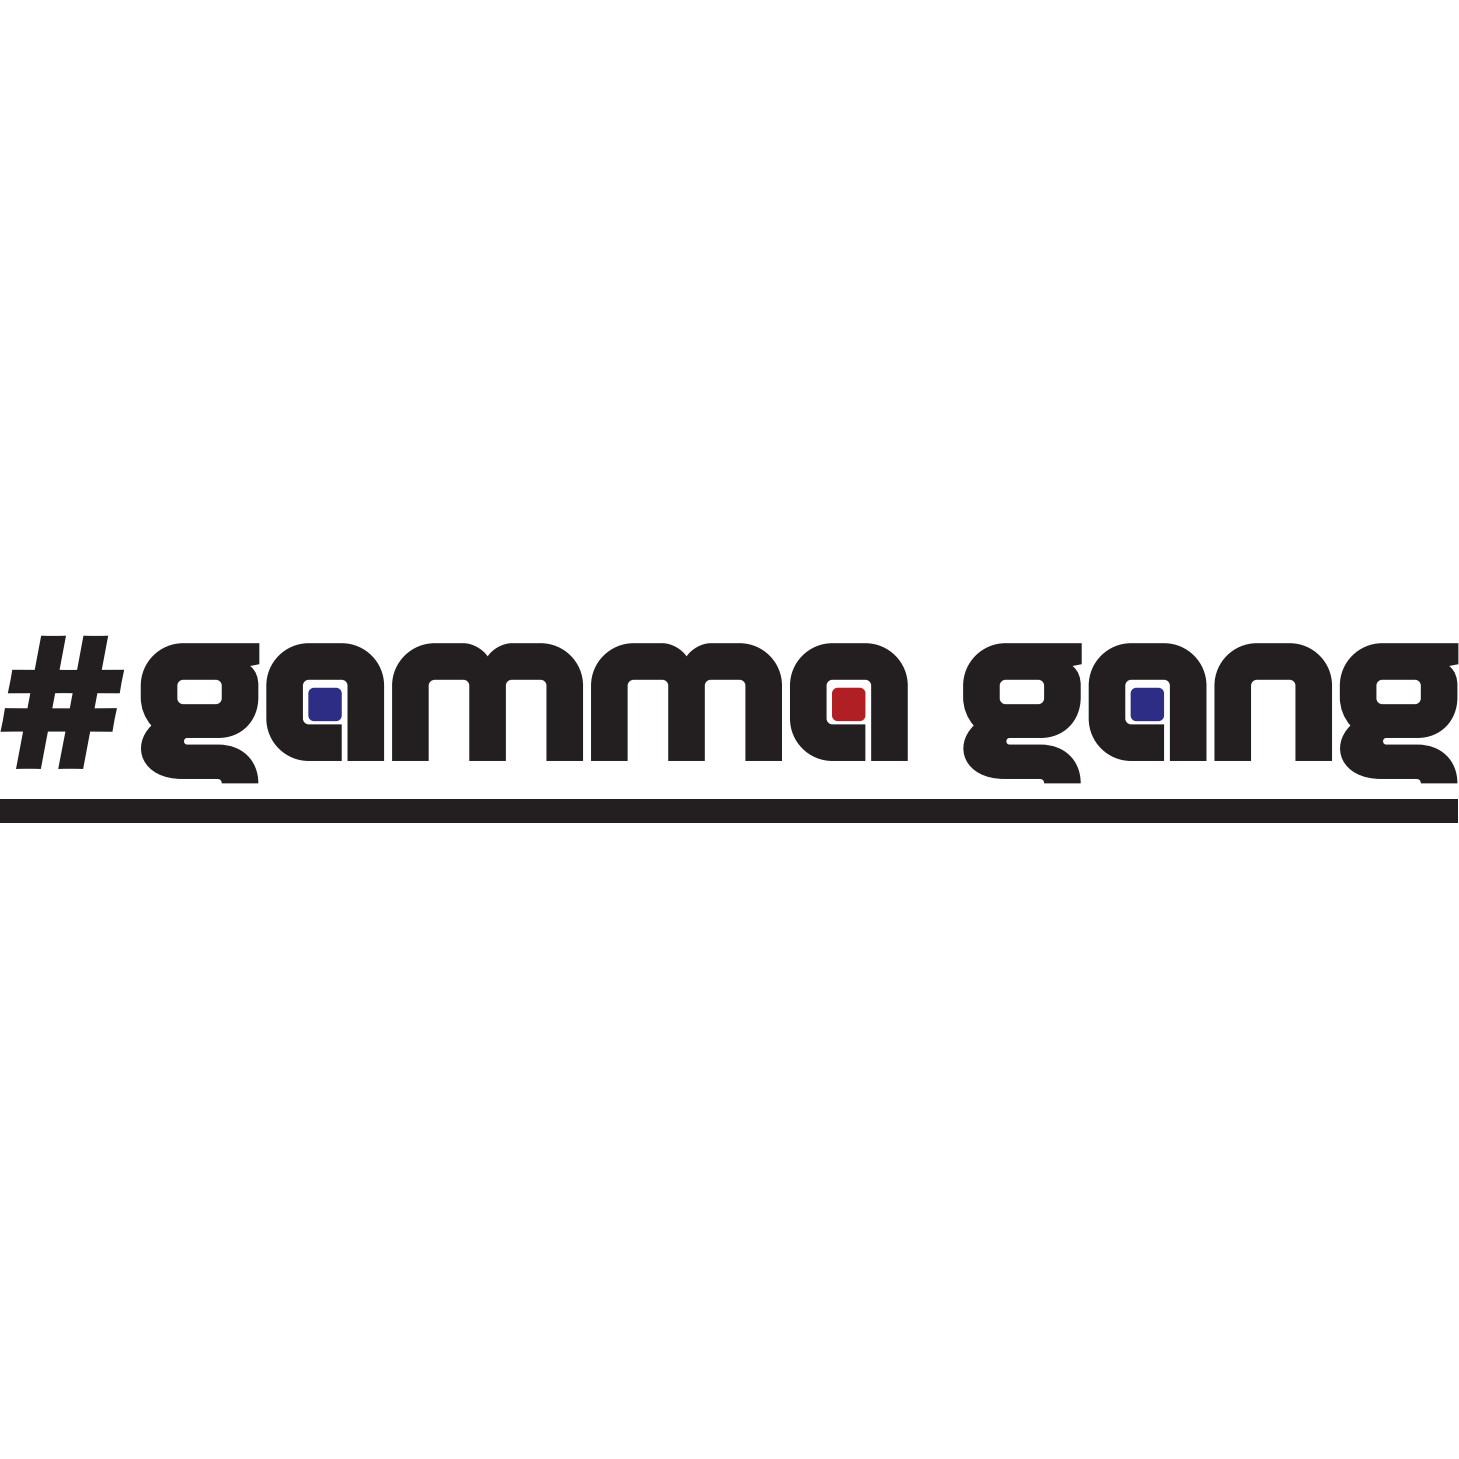 #gammagang Sticker